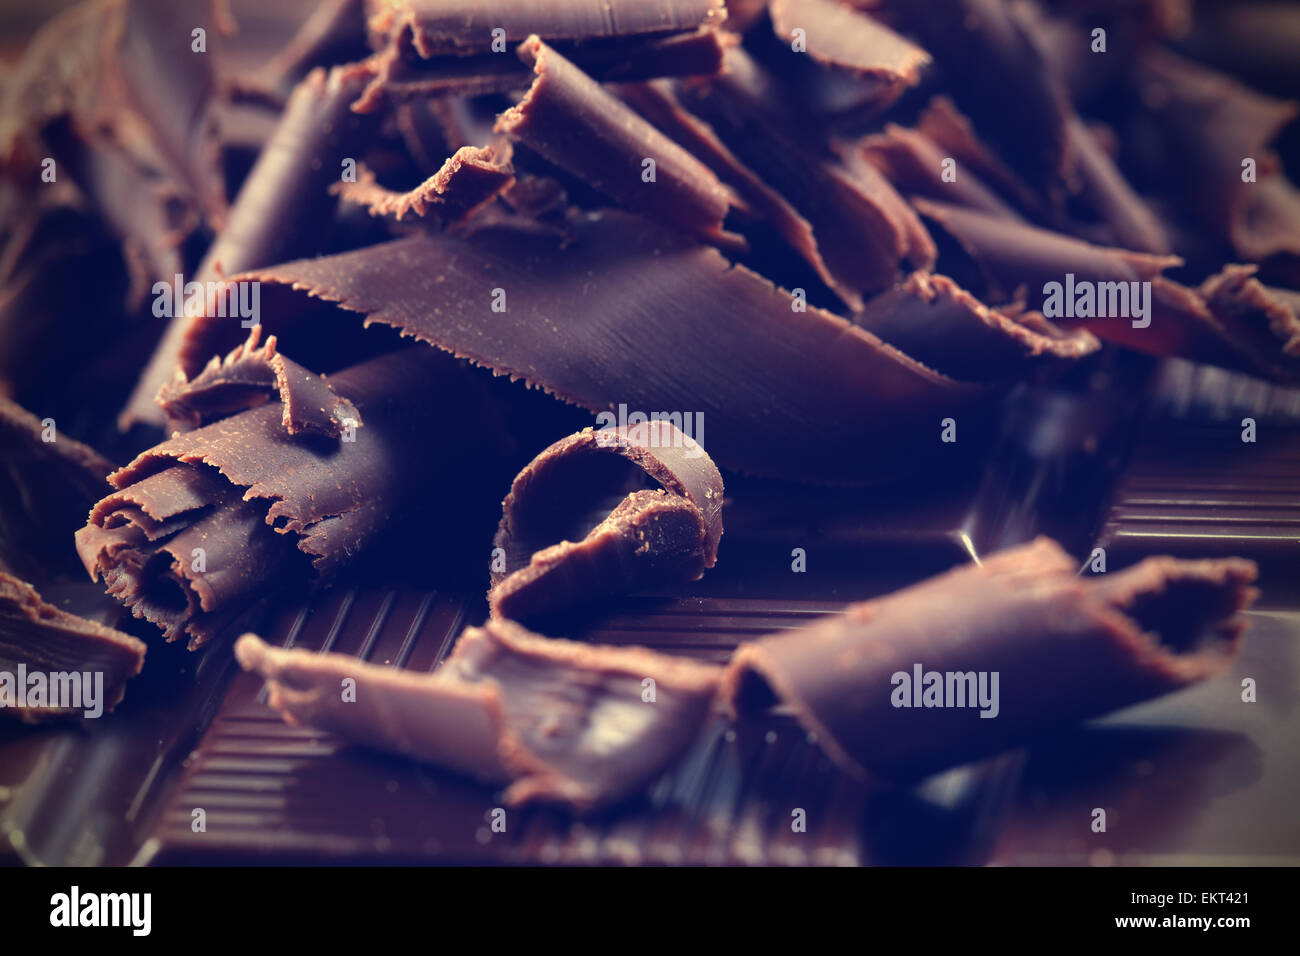 Dark chocolate shavings Stock Photo